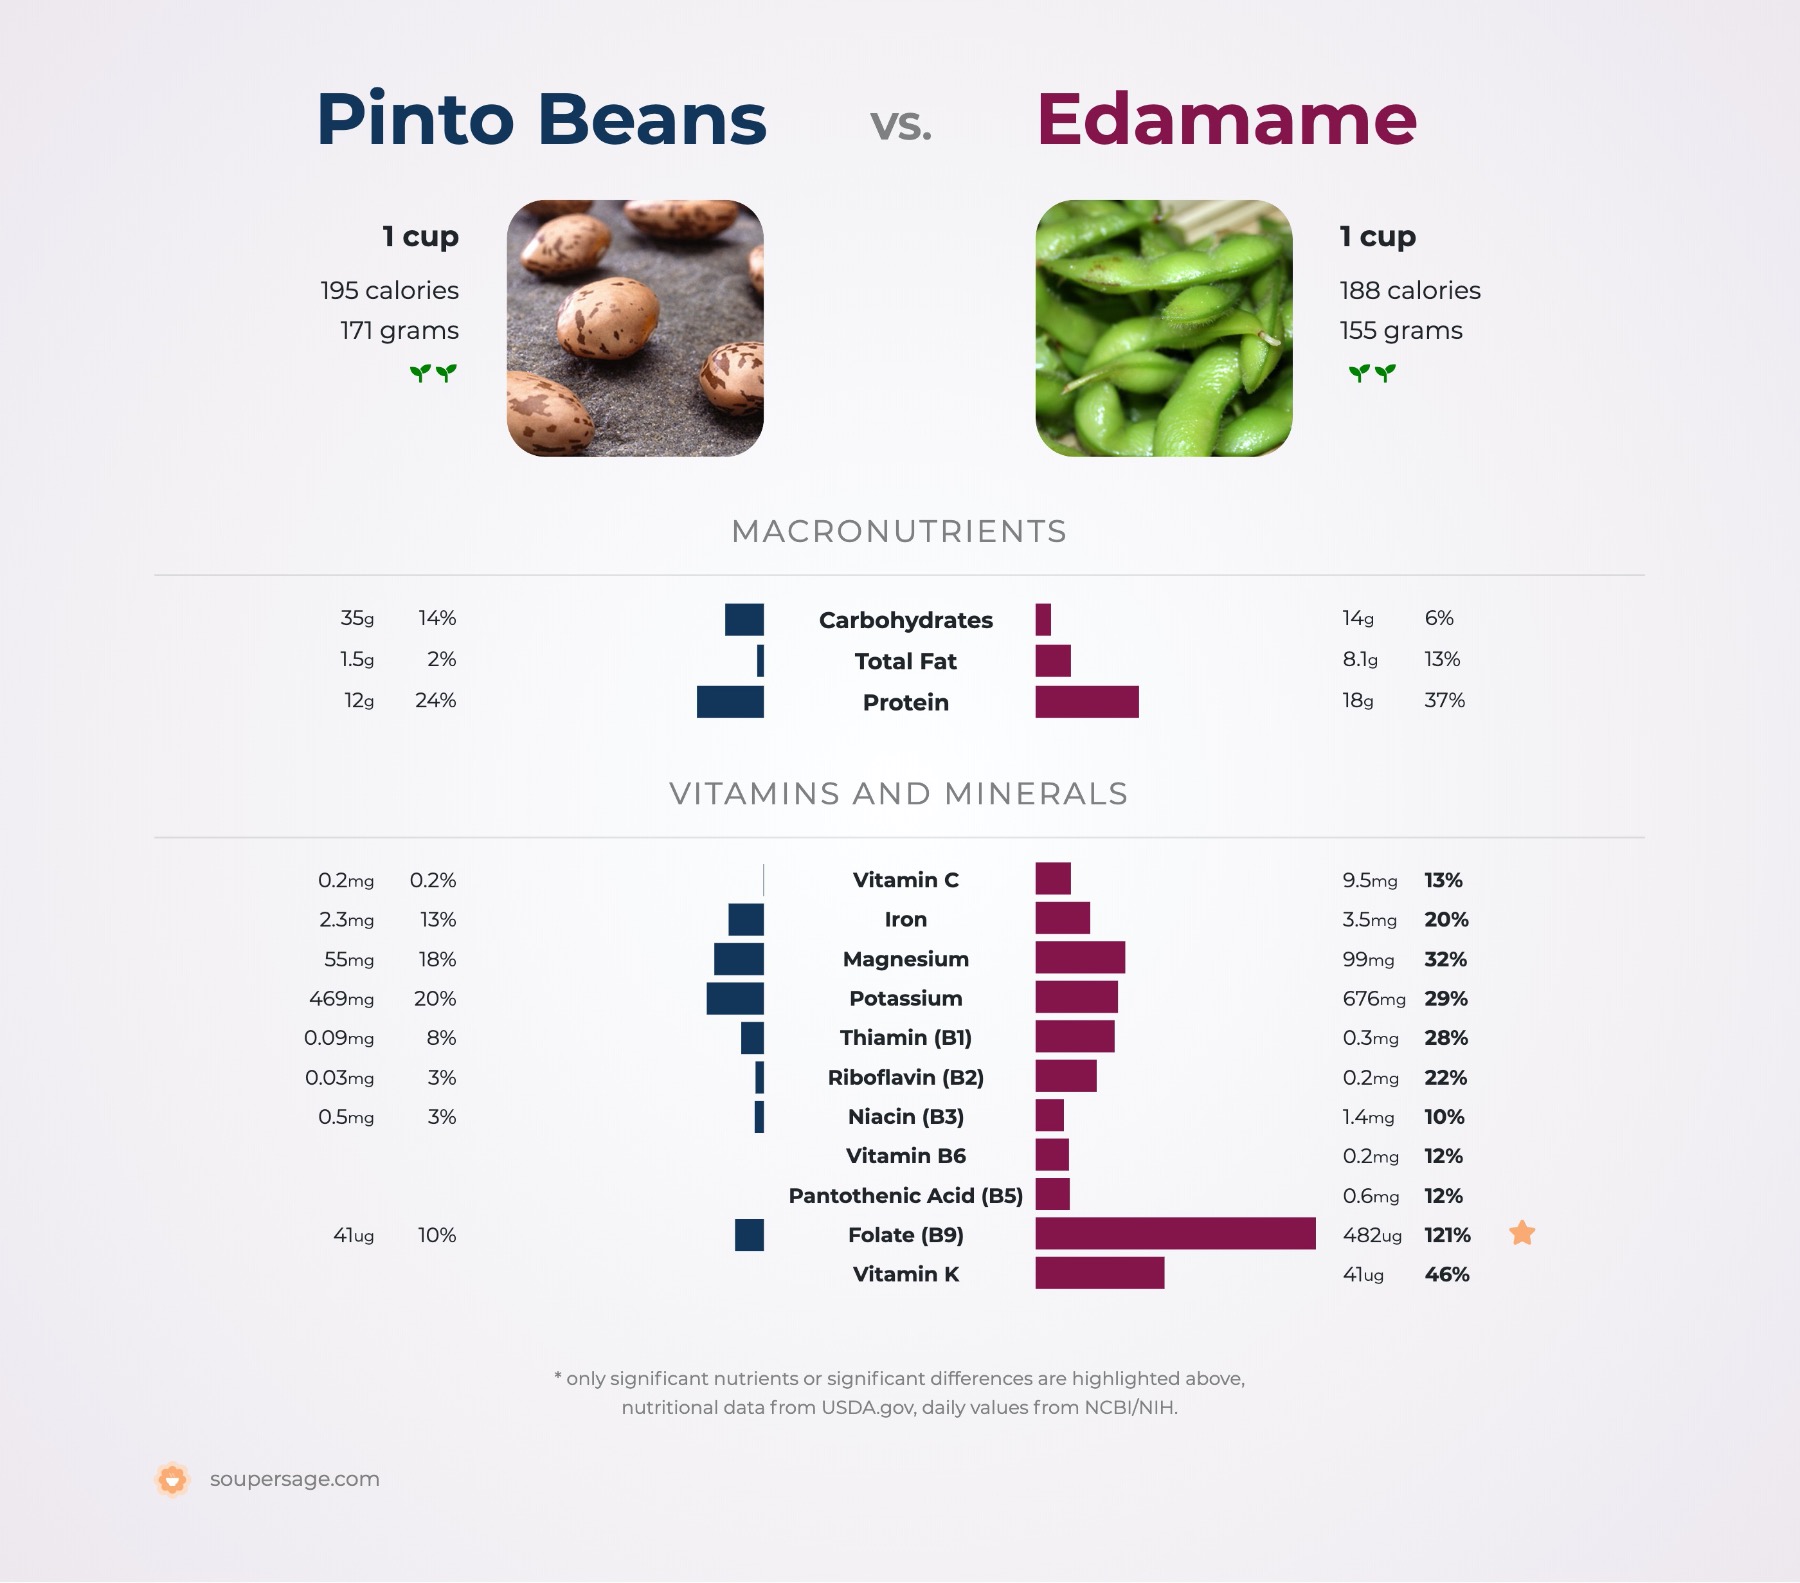 nutrition comparison of pinto beans vs. edamame